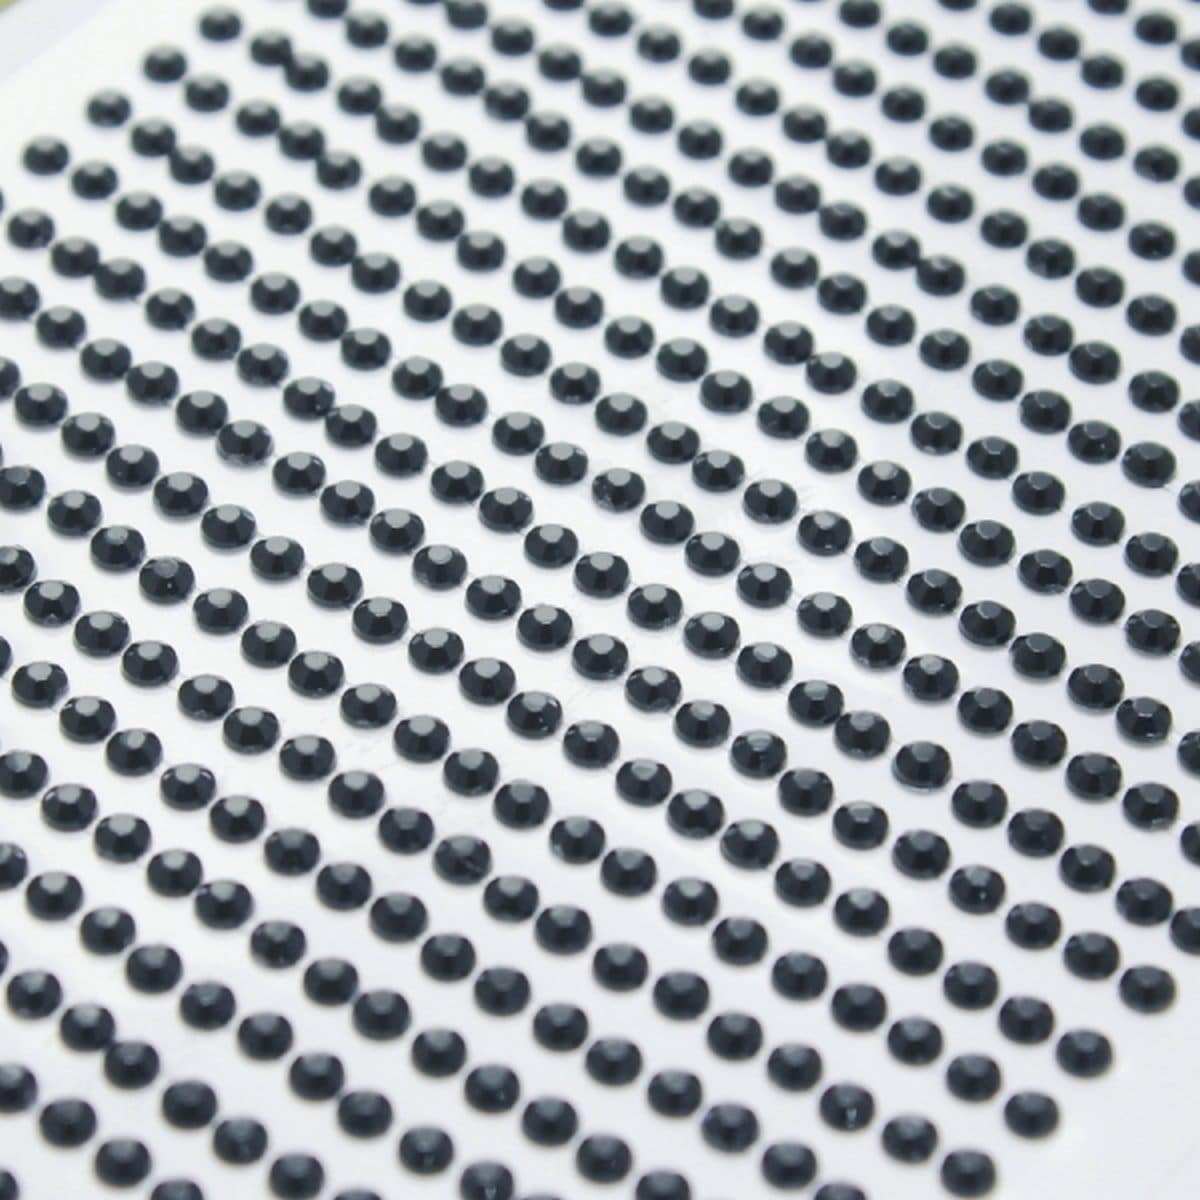 jags-mumbai Pearl & Diamond Stickers Sticker diamond 3mm 03 black